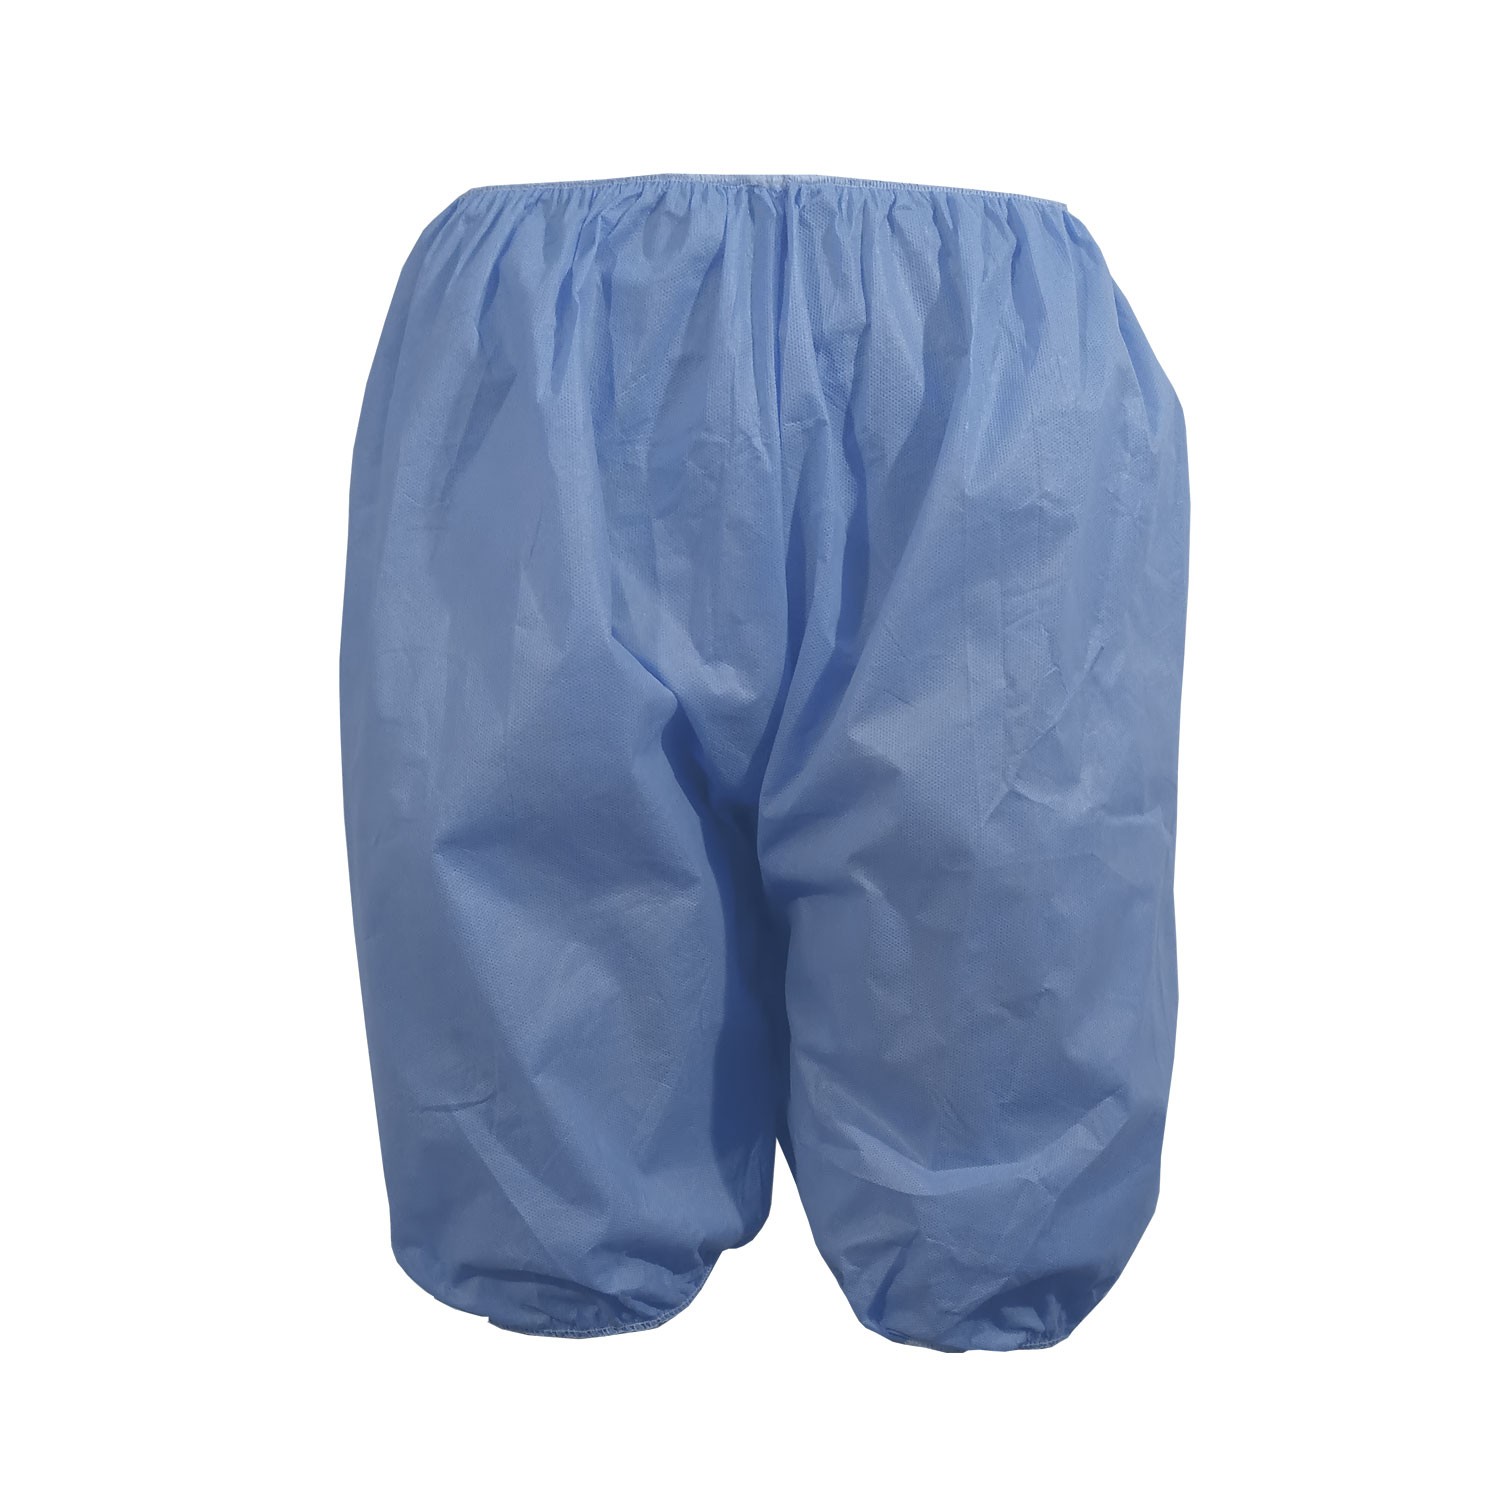  Patient Shorts (Elastic Legs) SMS Blue XL